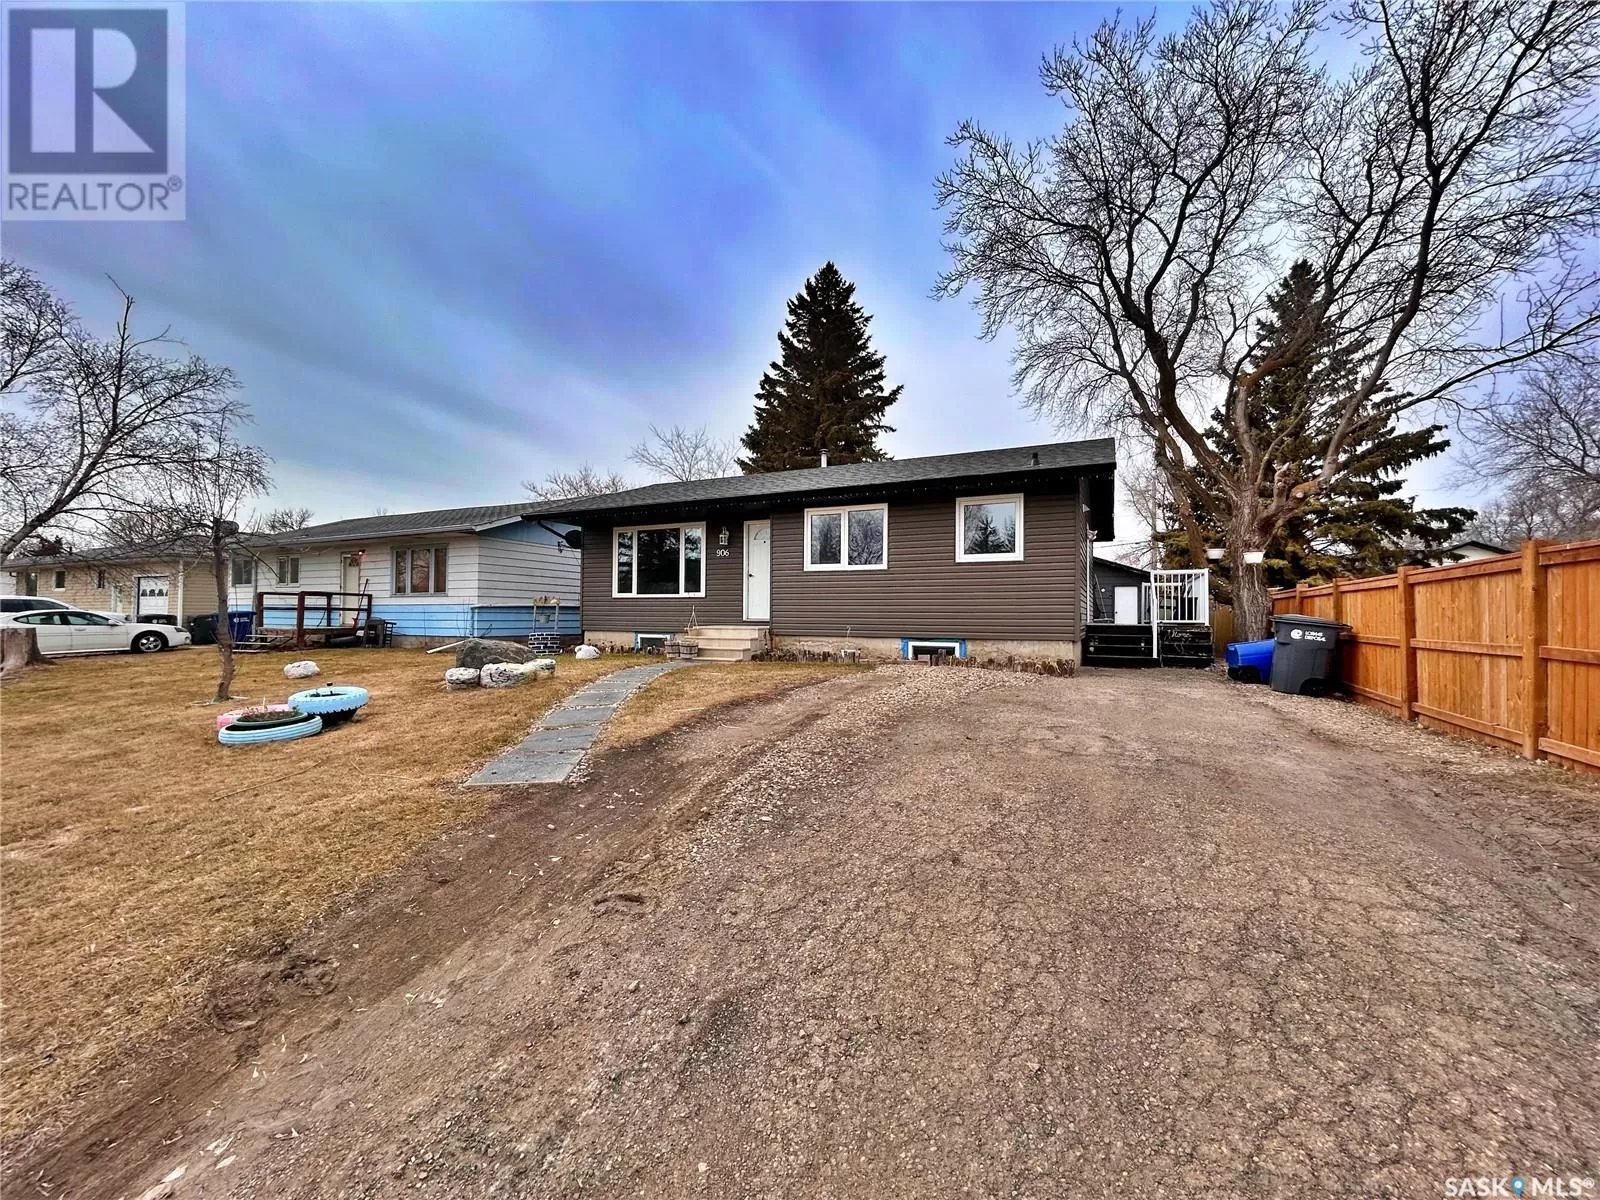 House for rent: 906 Ogilvie Street, Moosomin, Saskatchewan S0G 3N0